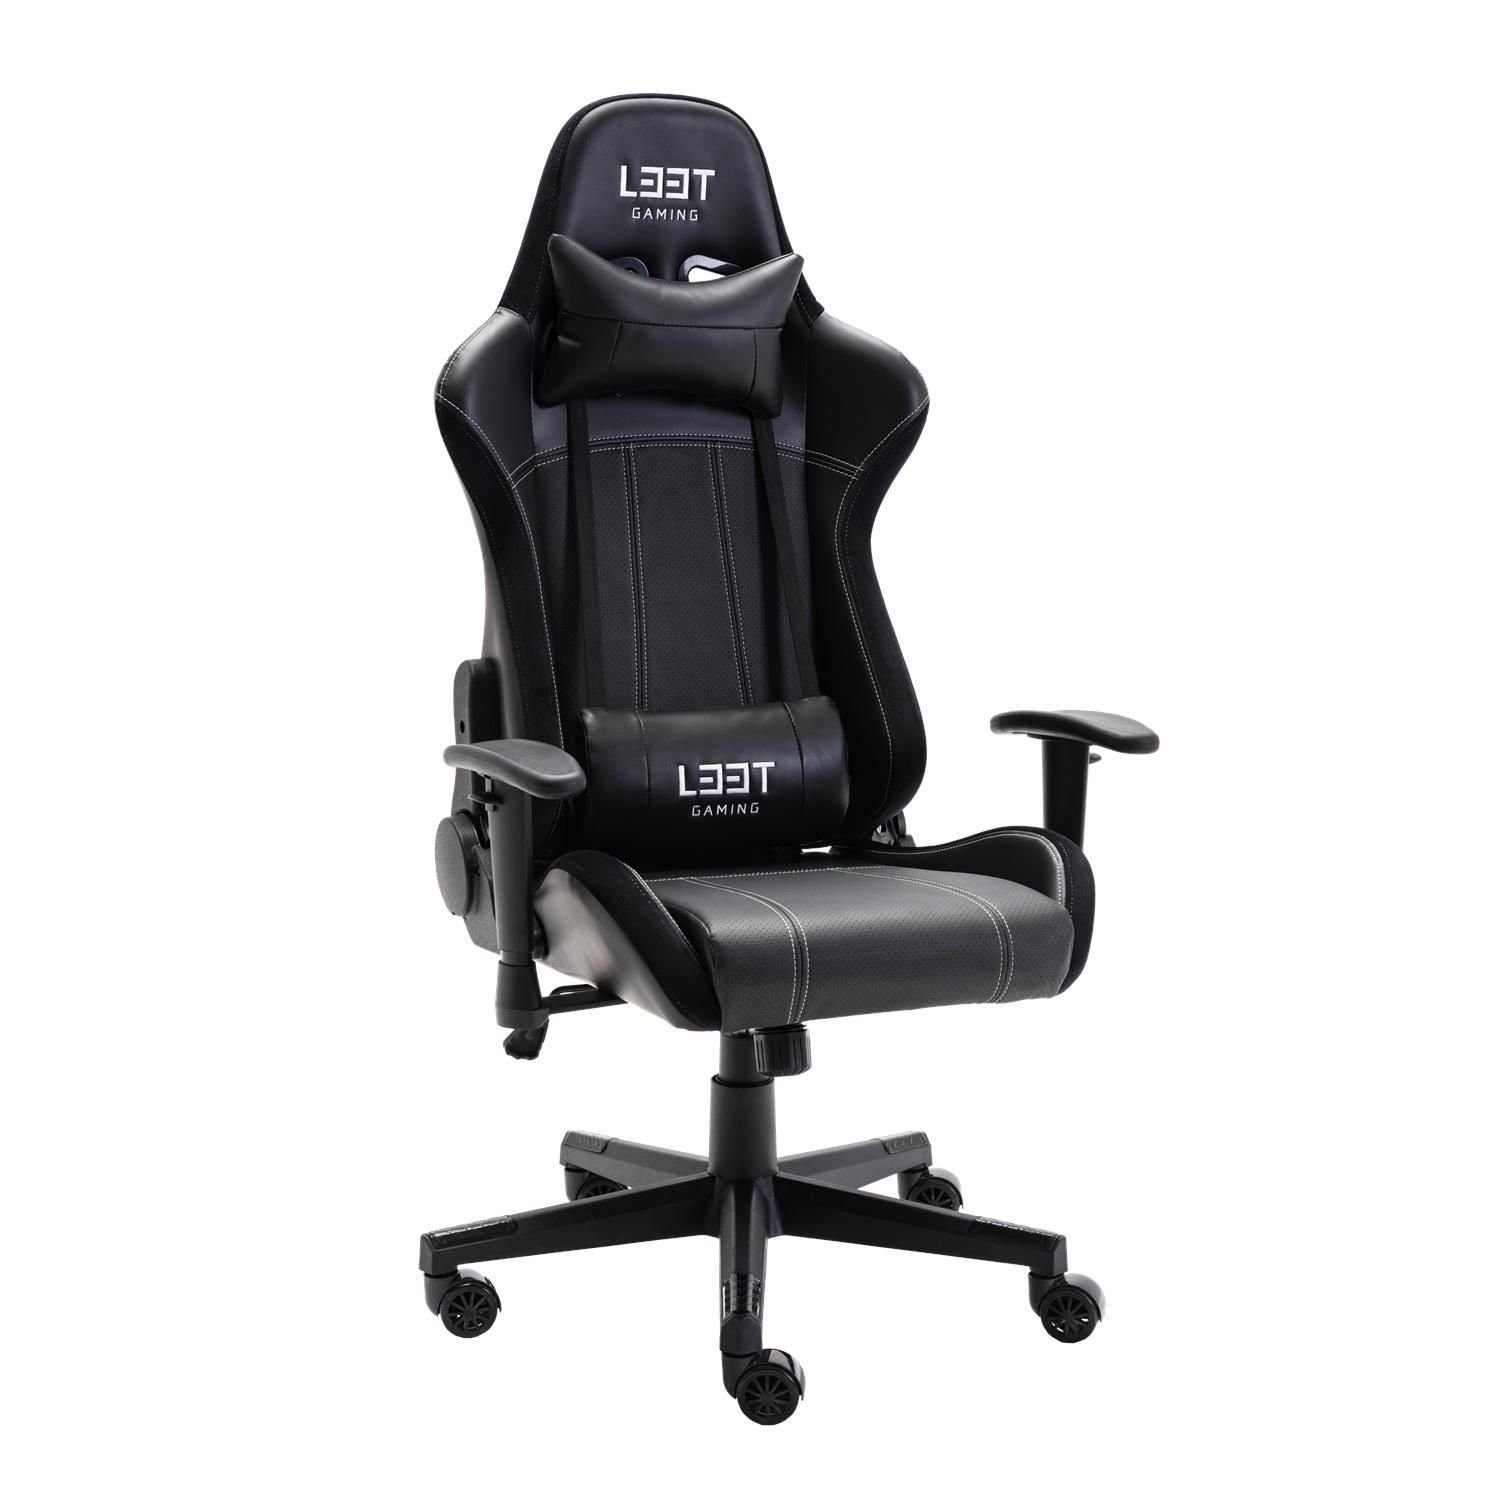 Büro-Stuhl kg neigbar, Stuhl Gaming (kein Evolve L33T mit belastbar Set), 120 höhenverstellbar, bis Armlehne / Gaming-Stuhl